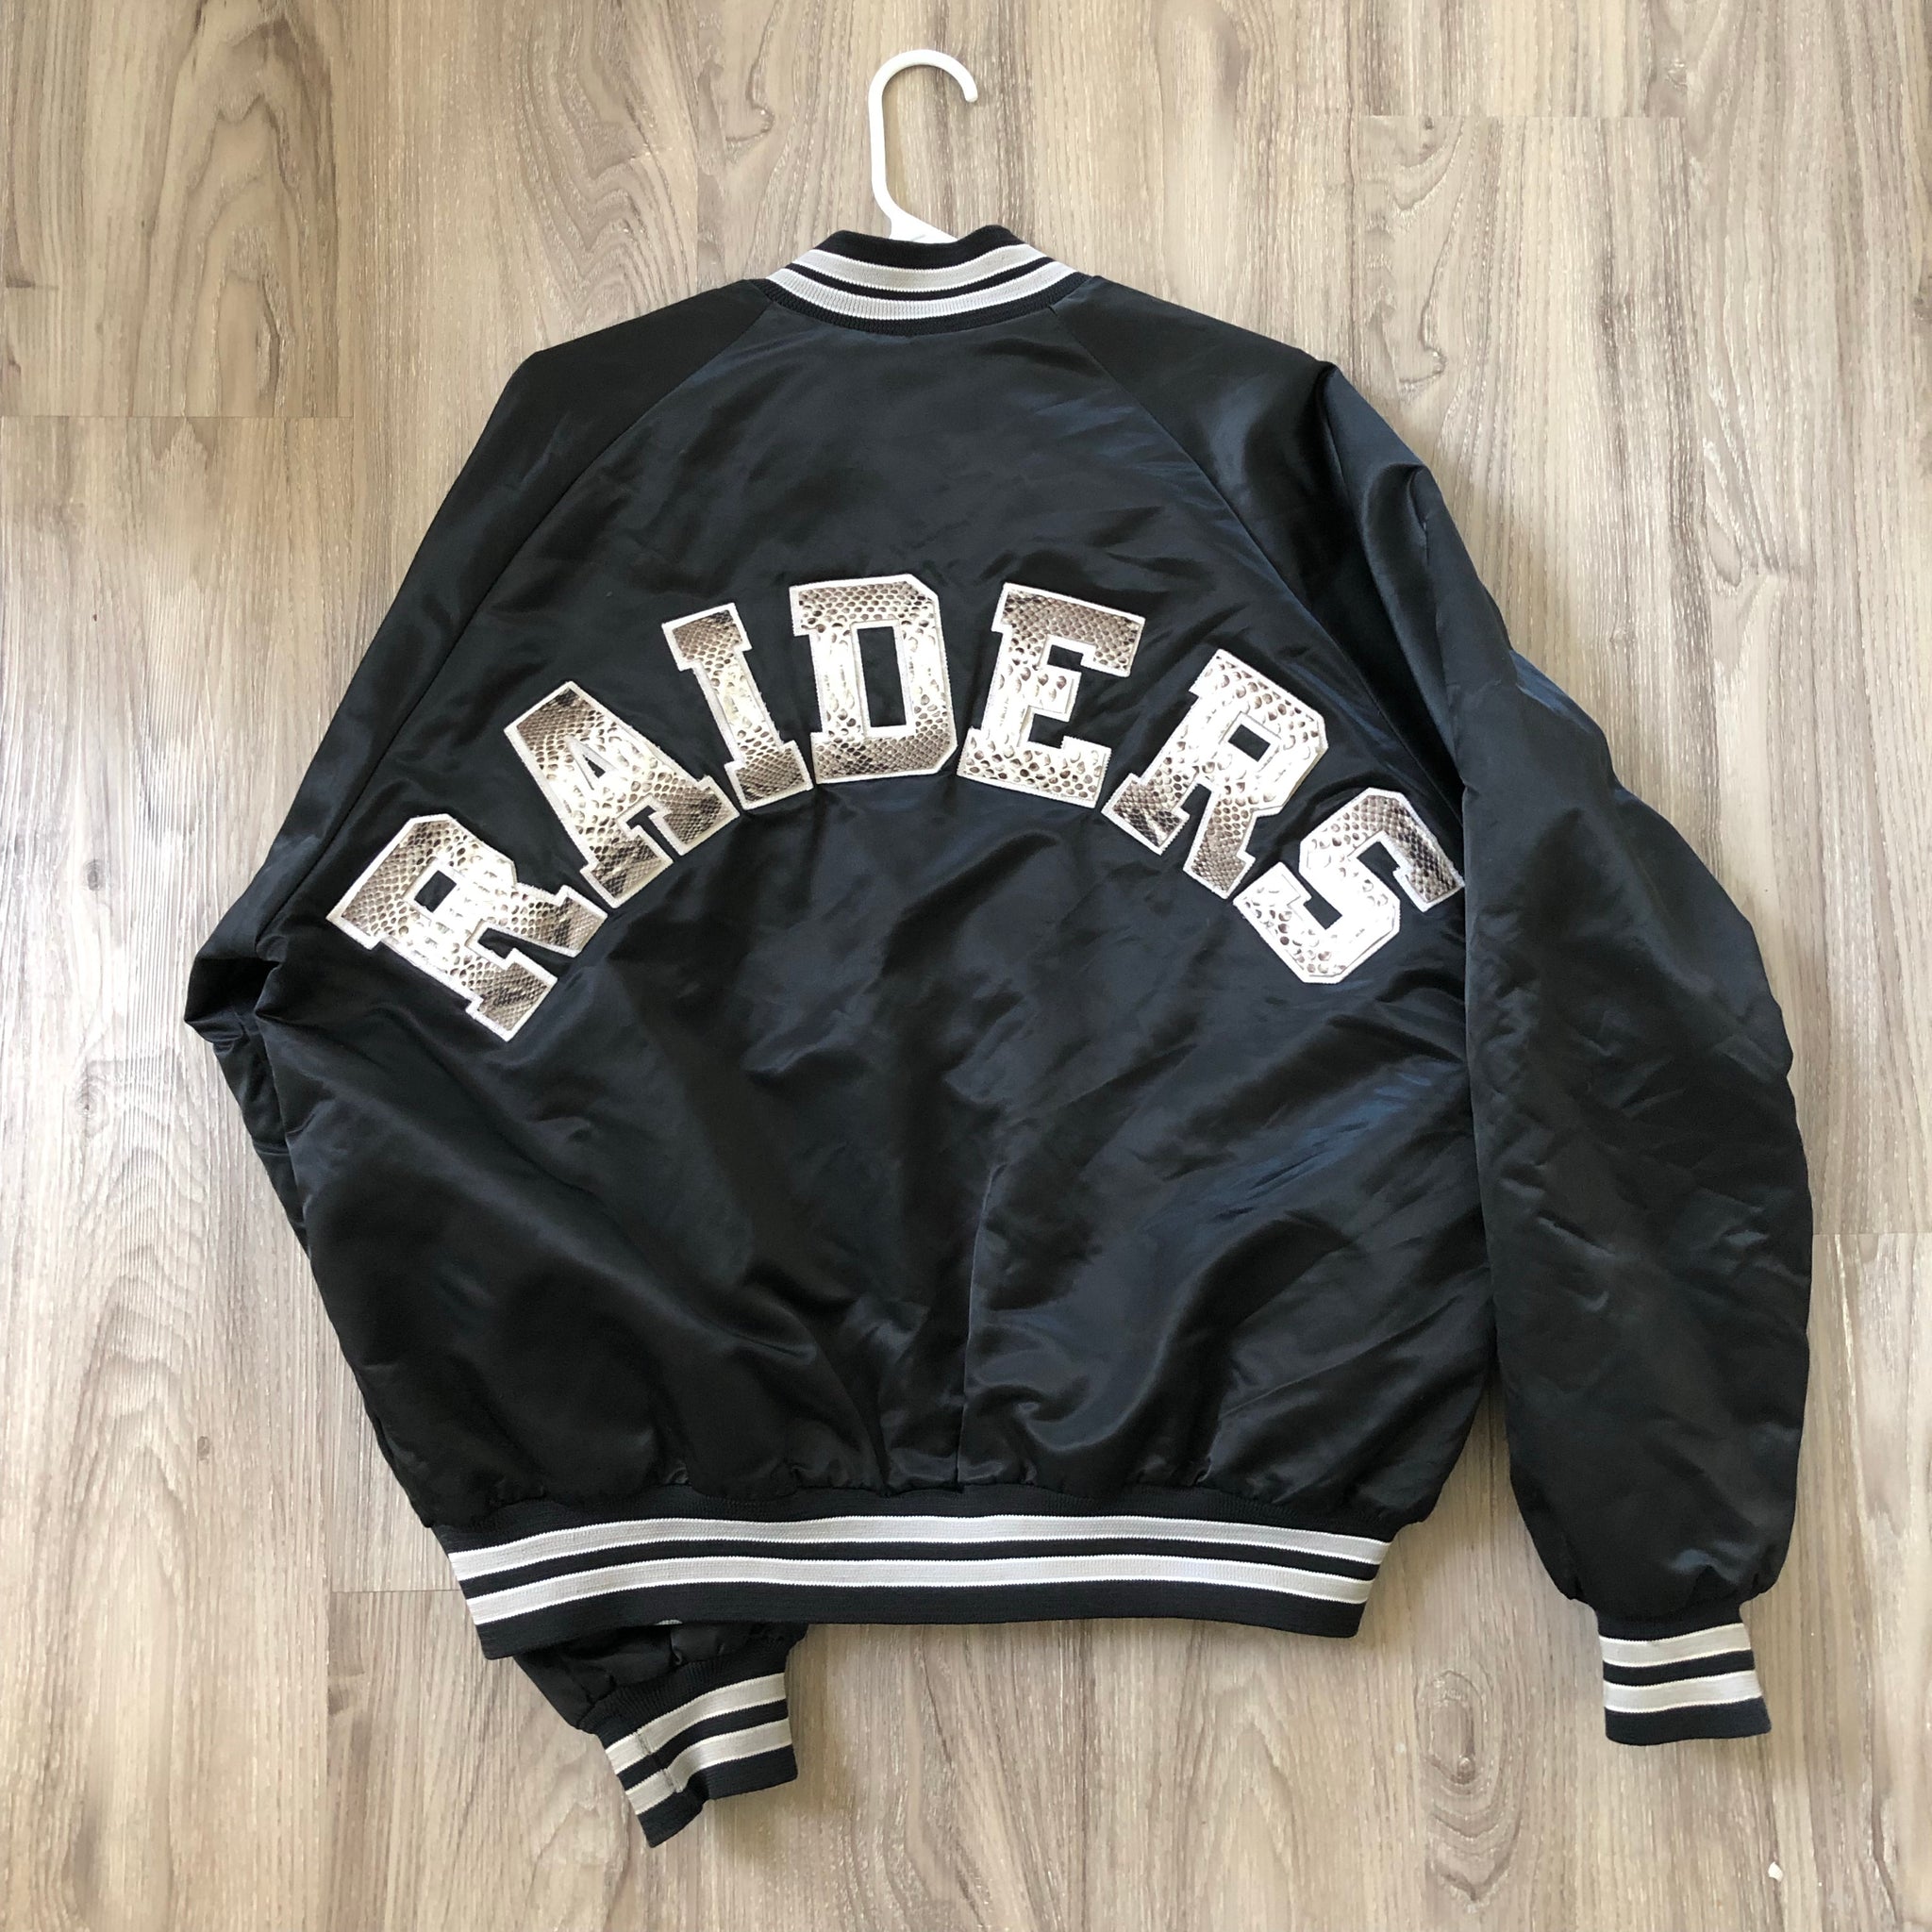 Vintage Chalkline Raiders Jacket – LIVESTRONG4EVER